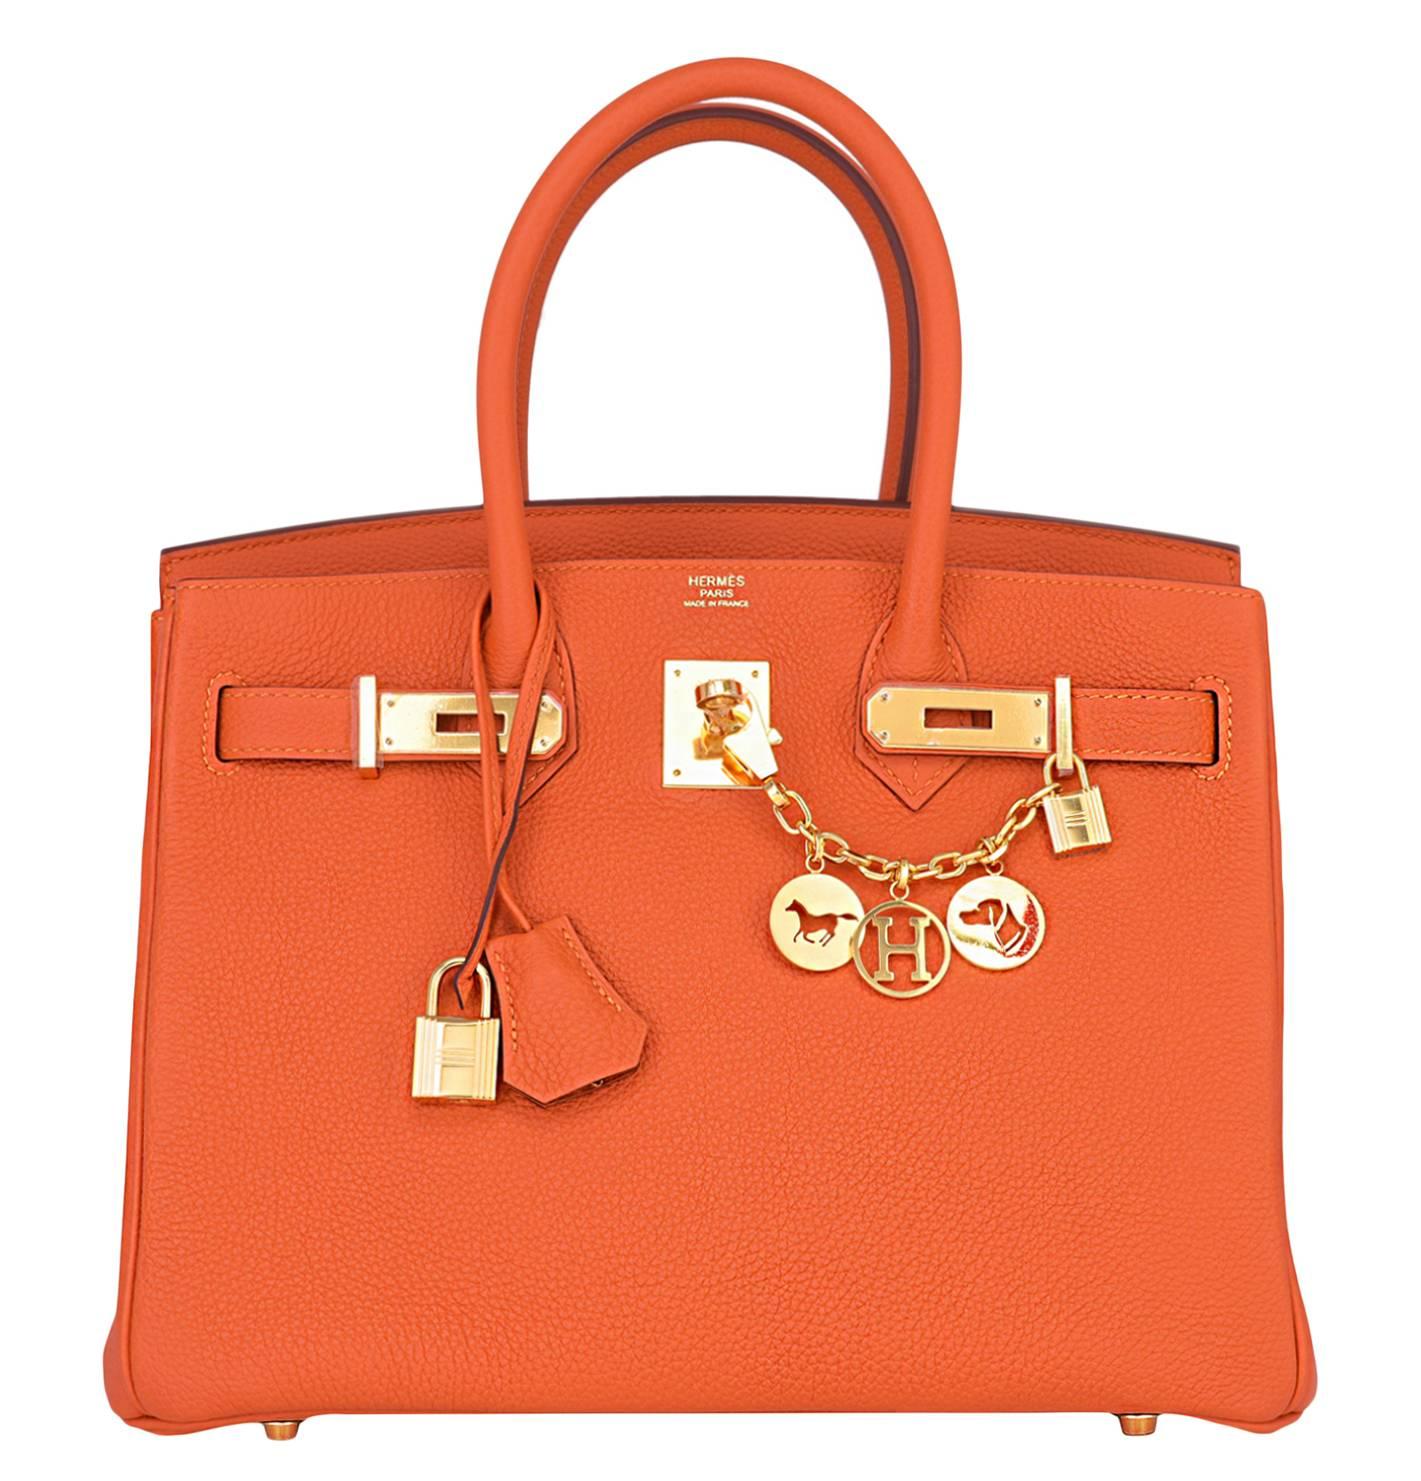 Hermes Feu Orange 30cm Togo Birkin Bag Gold Hardware Spring!